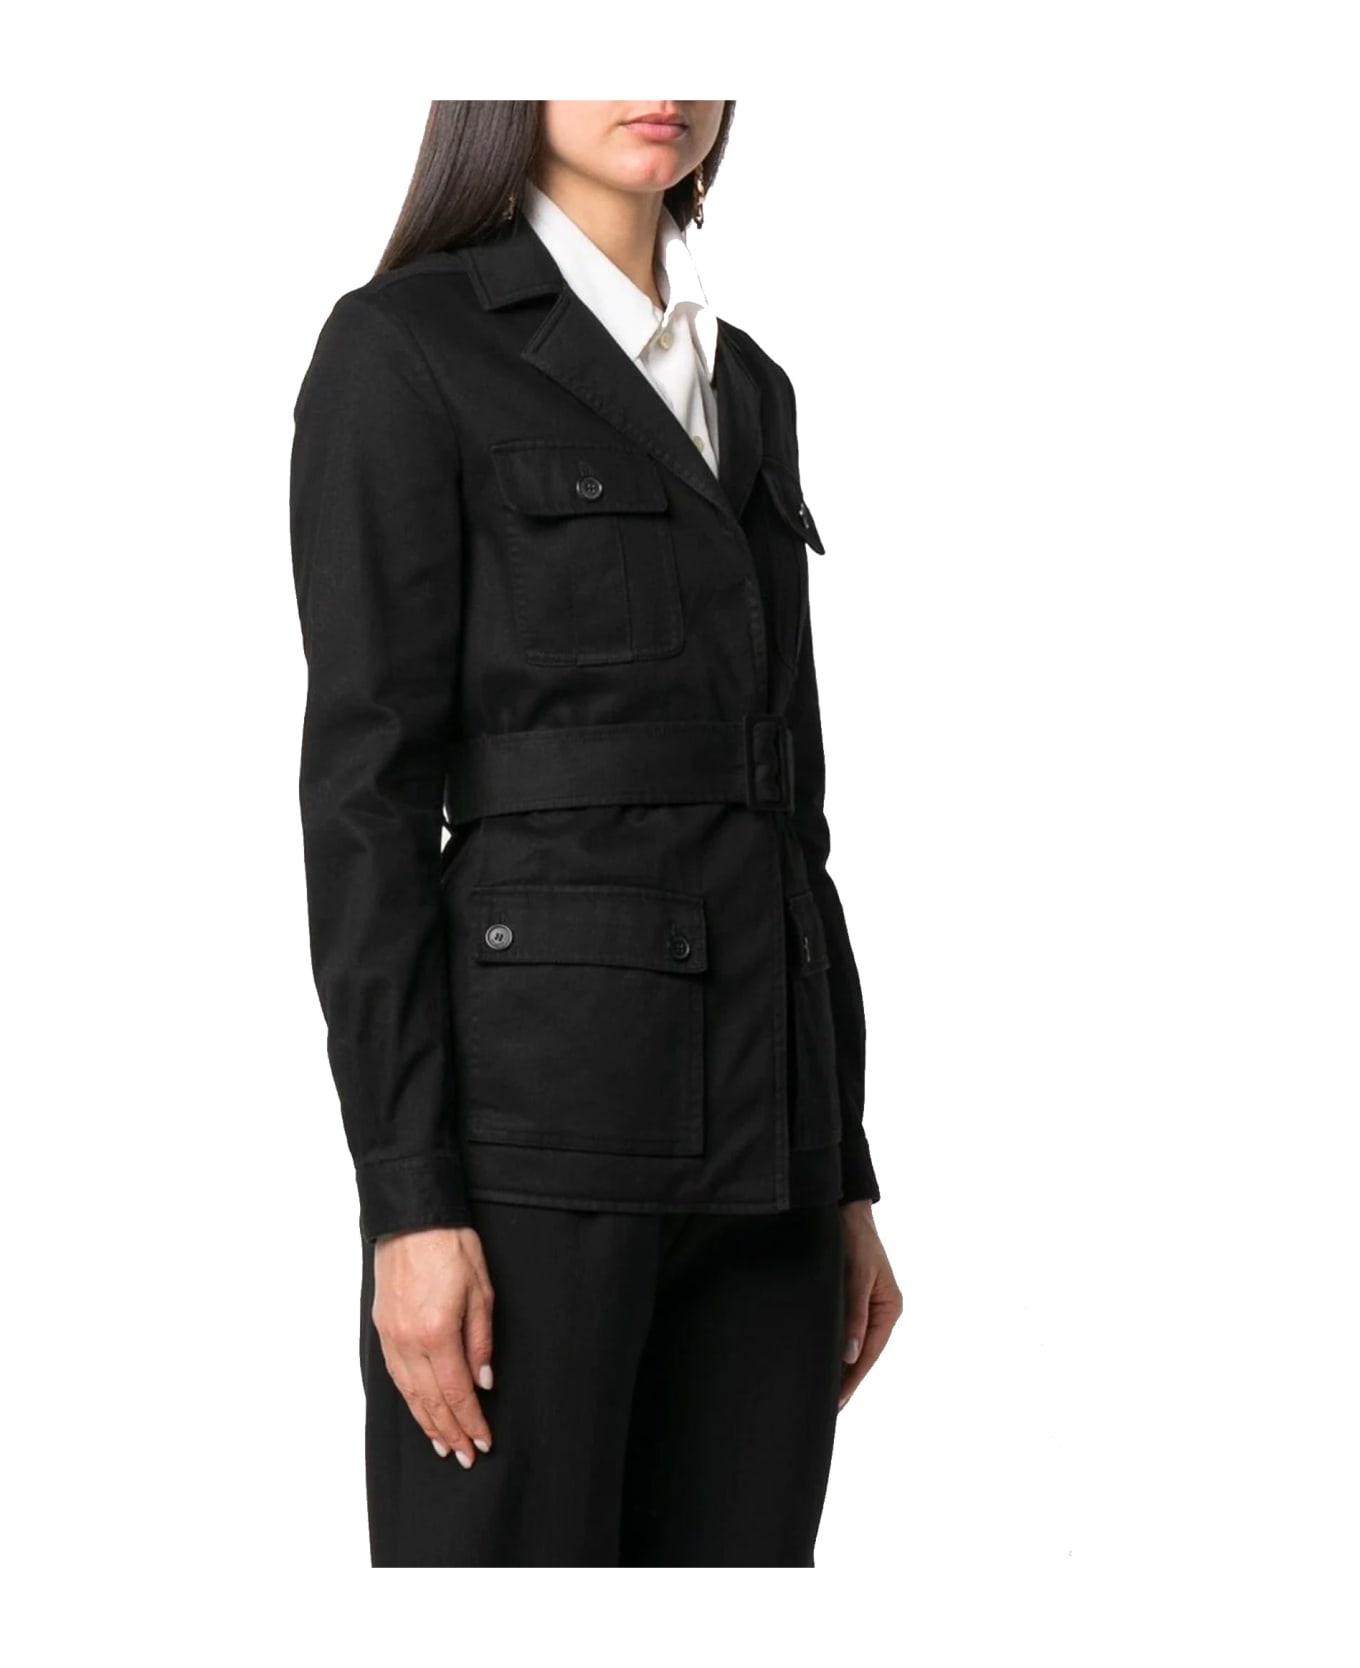 Saint Laurent Belted Flap Pocket Jacket - Black